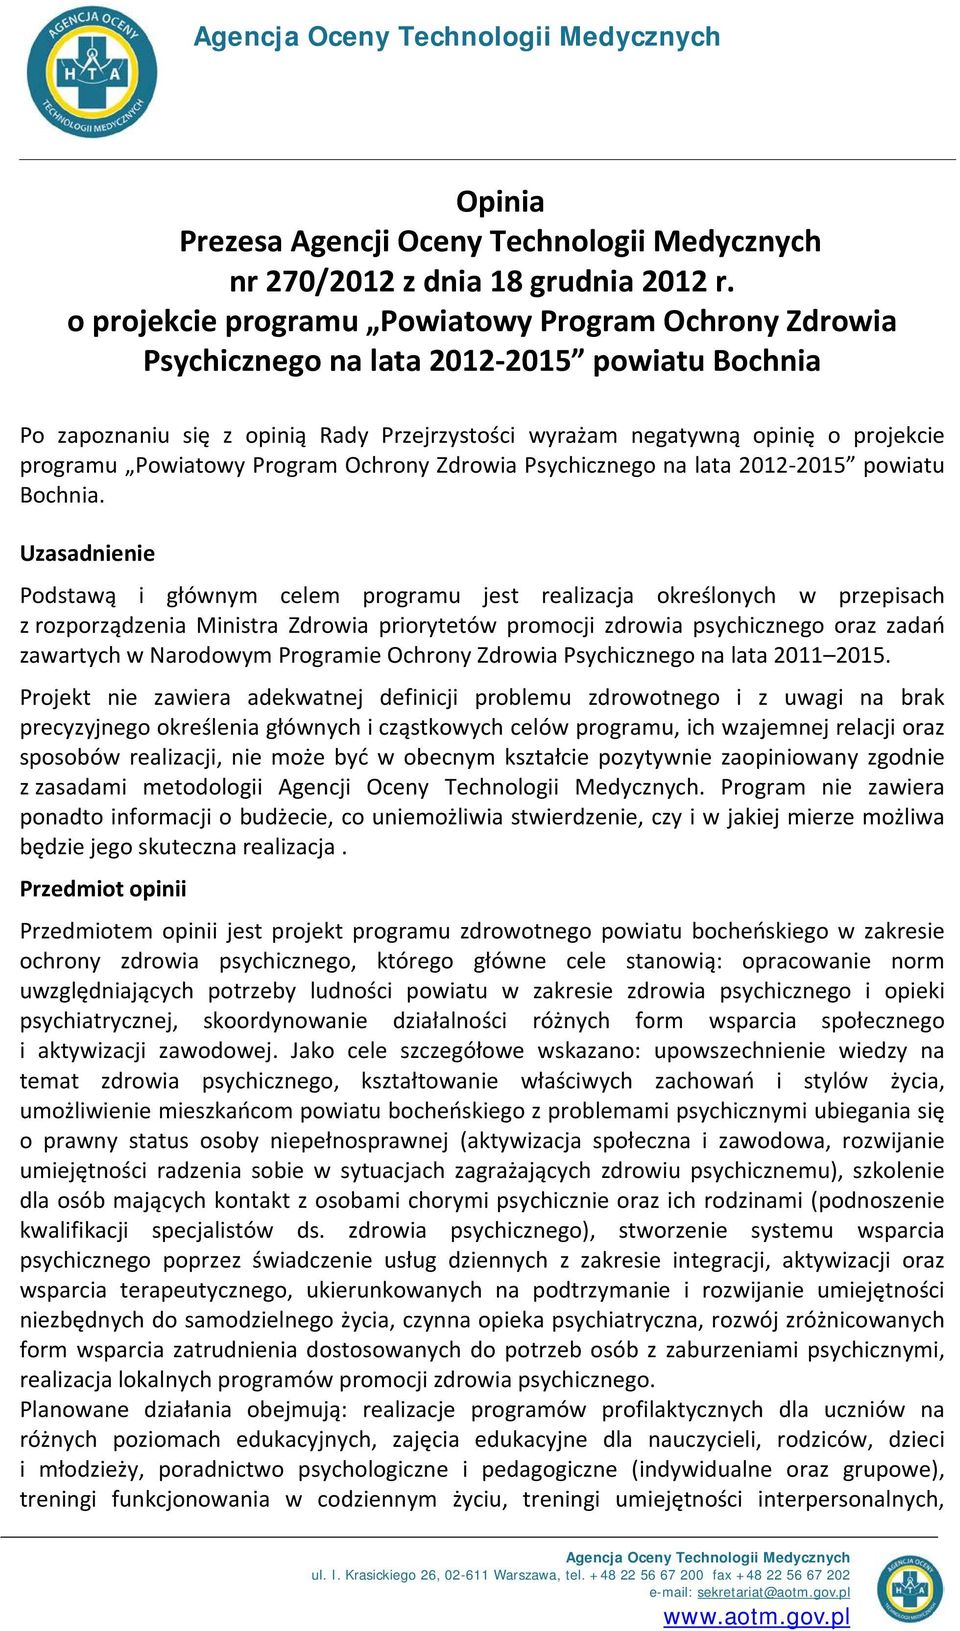 Powiatowy Program Ochrony Zdrowia Psychicznego na lata 2012-2015 powiatu Bochnia.